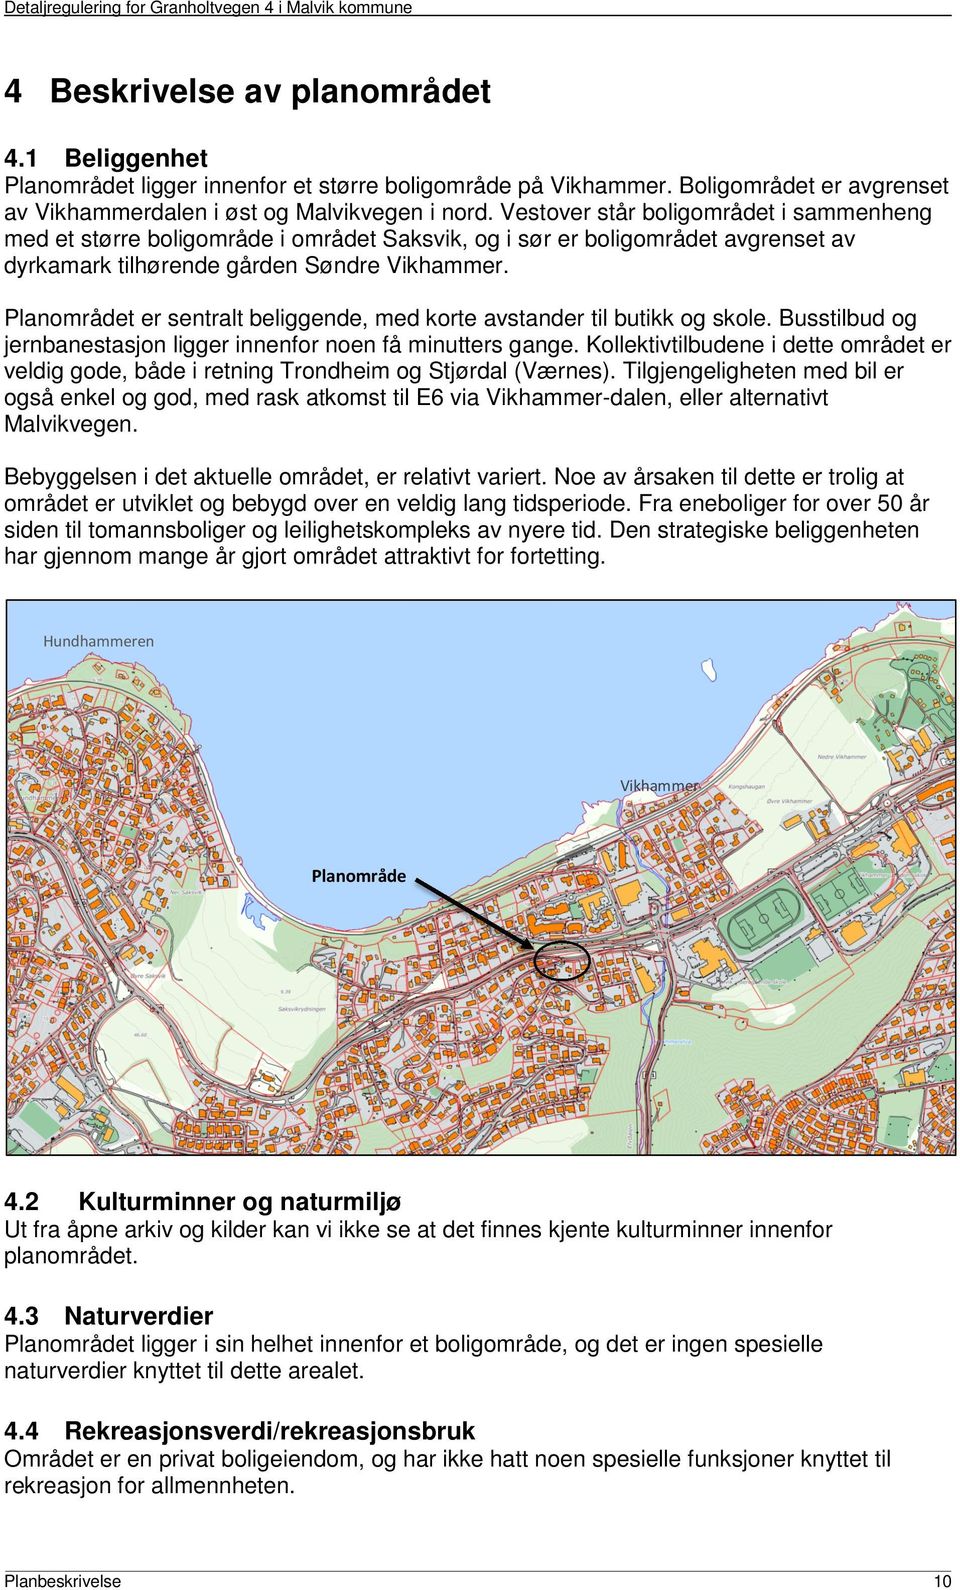 Vestover står boligområdet i sammenheng med et større boligområde i området Saksvik, og i sør er boligområdet avgrenset av dyrkamark tilhørende gården Søndre Vikhammer.